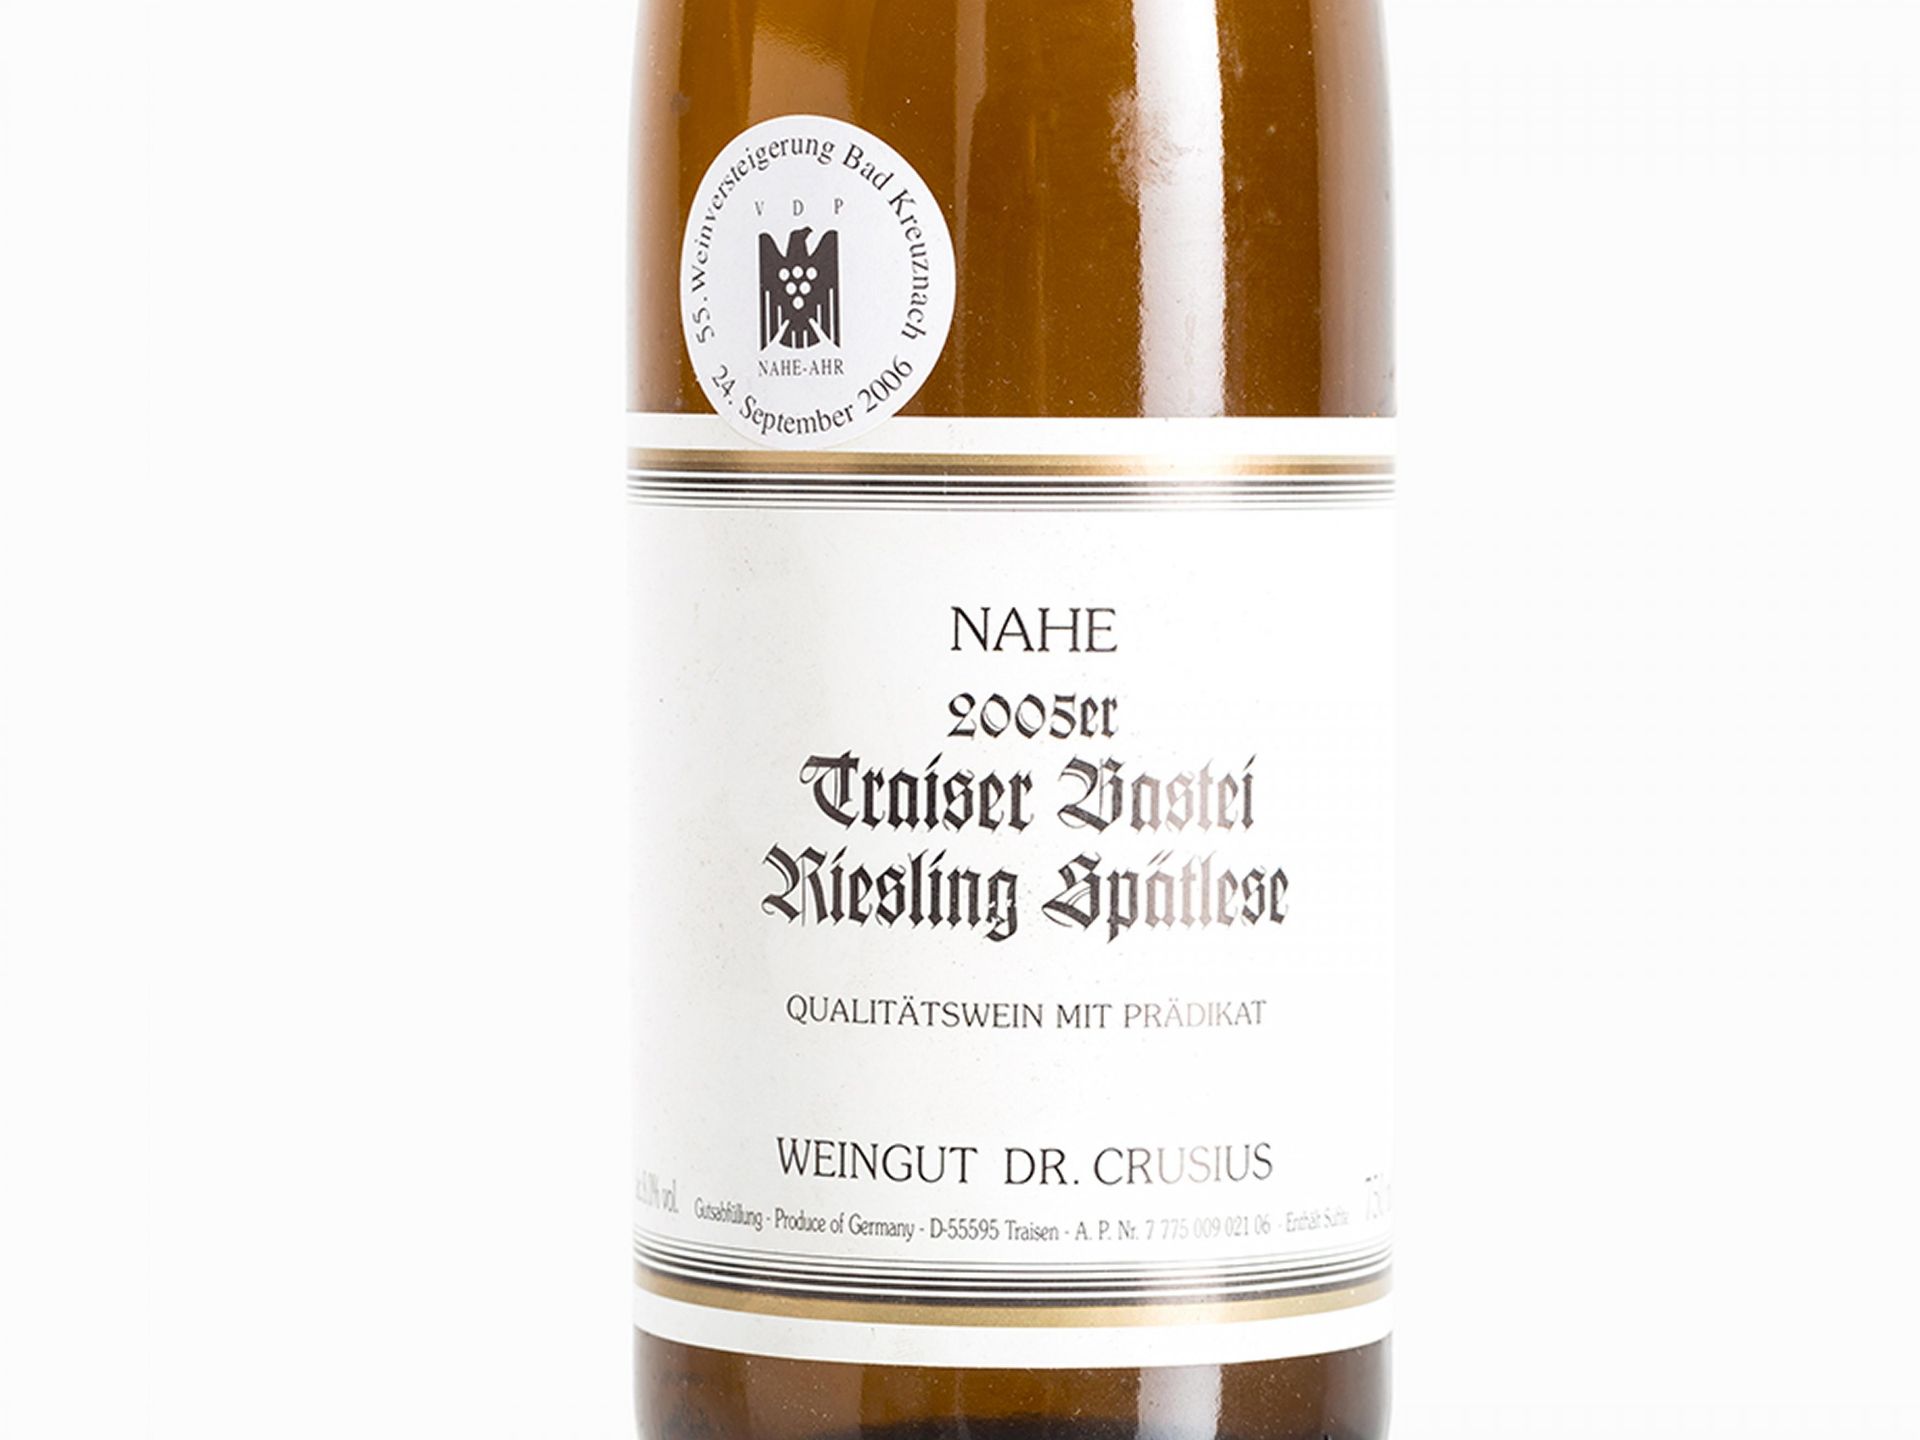 24 Flaschen Traiser Bastei Riesling Spätlese Goldkapsel Erzeuger: Dr. Crusius Jahrgang 2005 Traisen, - Bild 3 aus 6